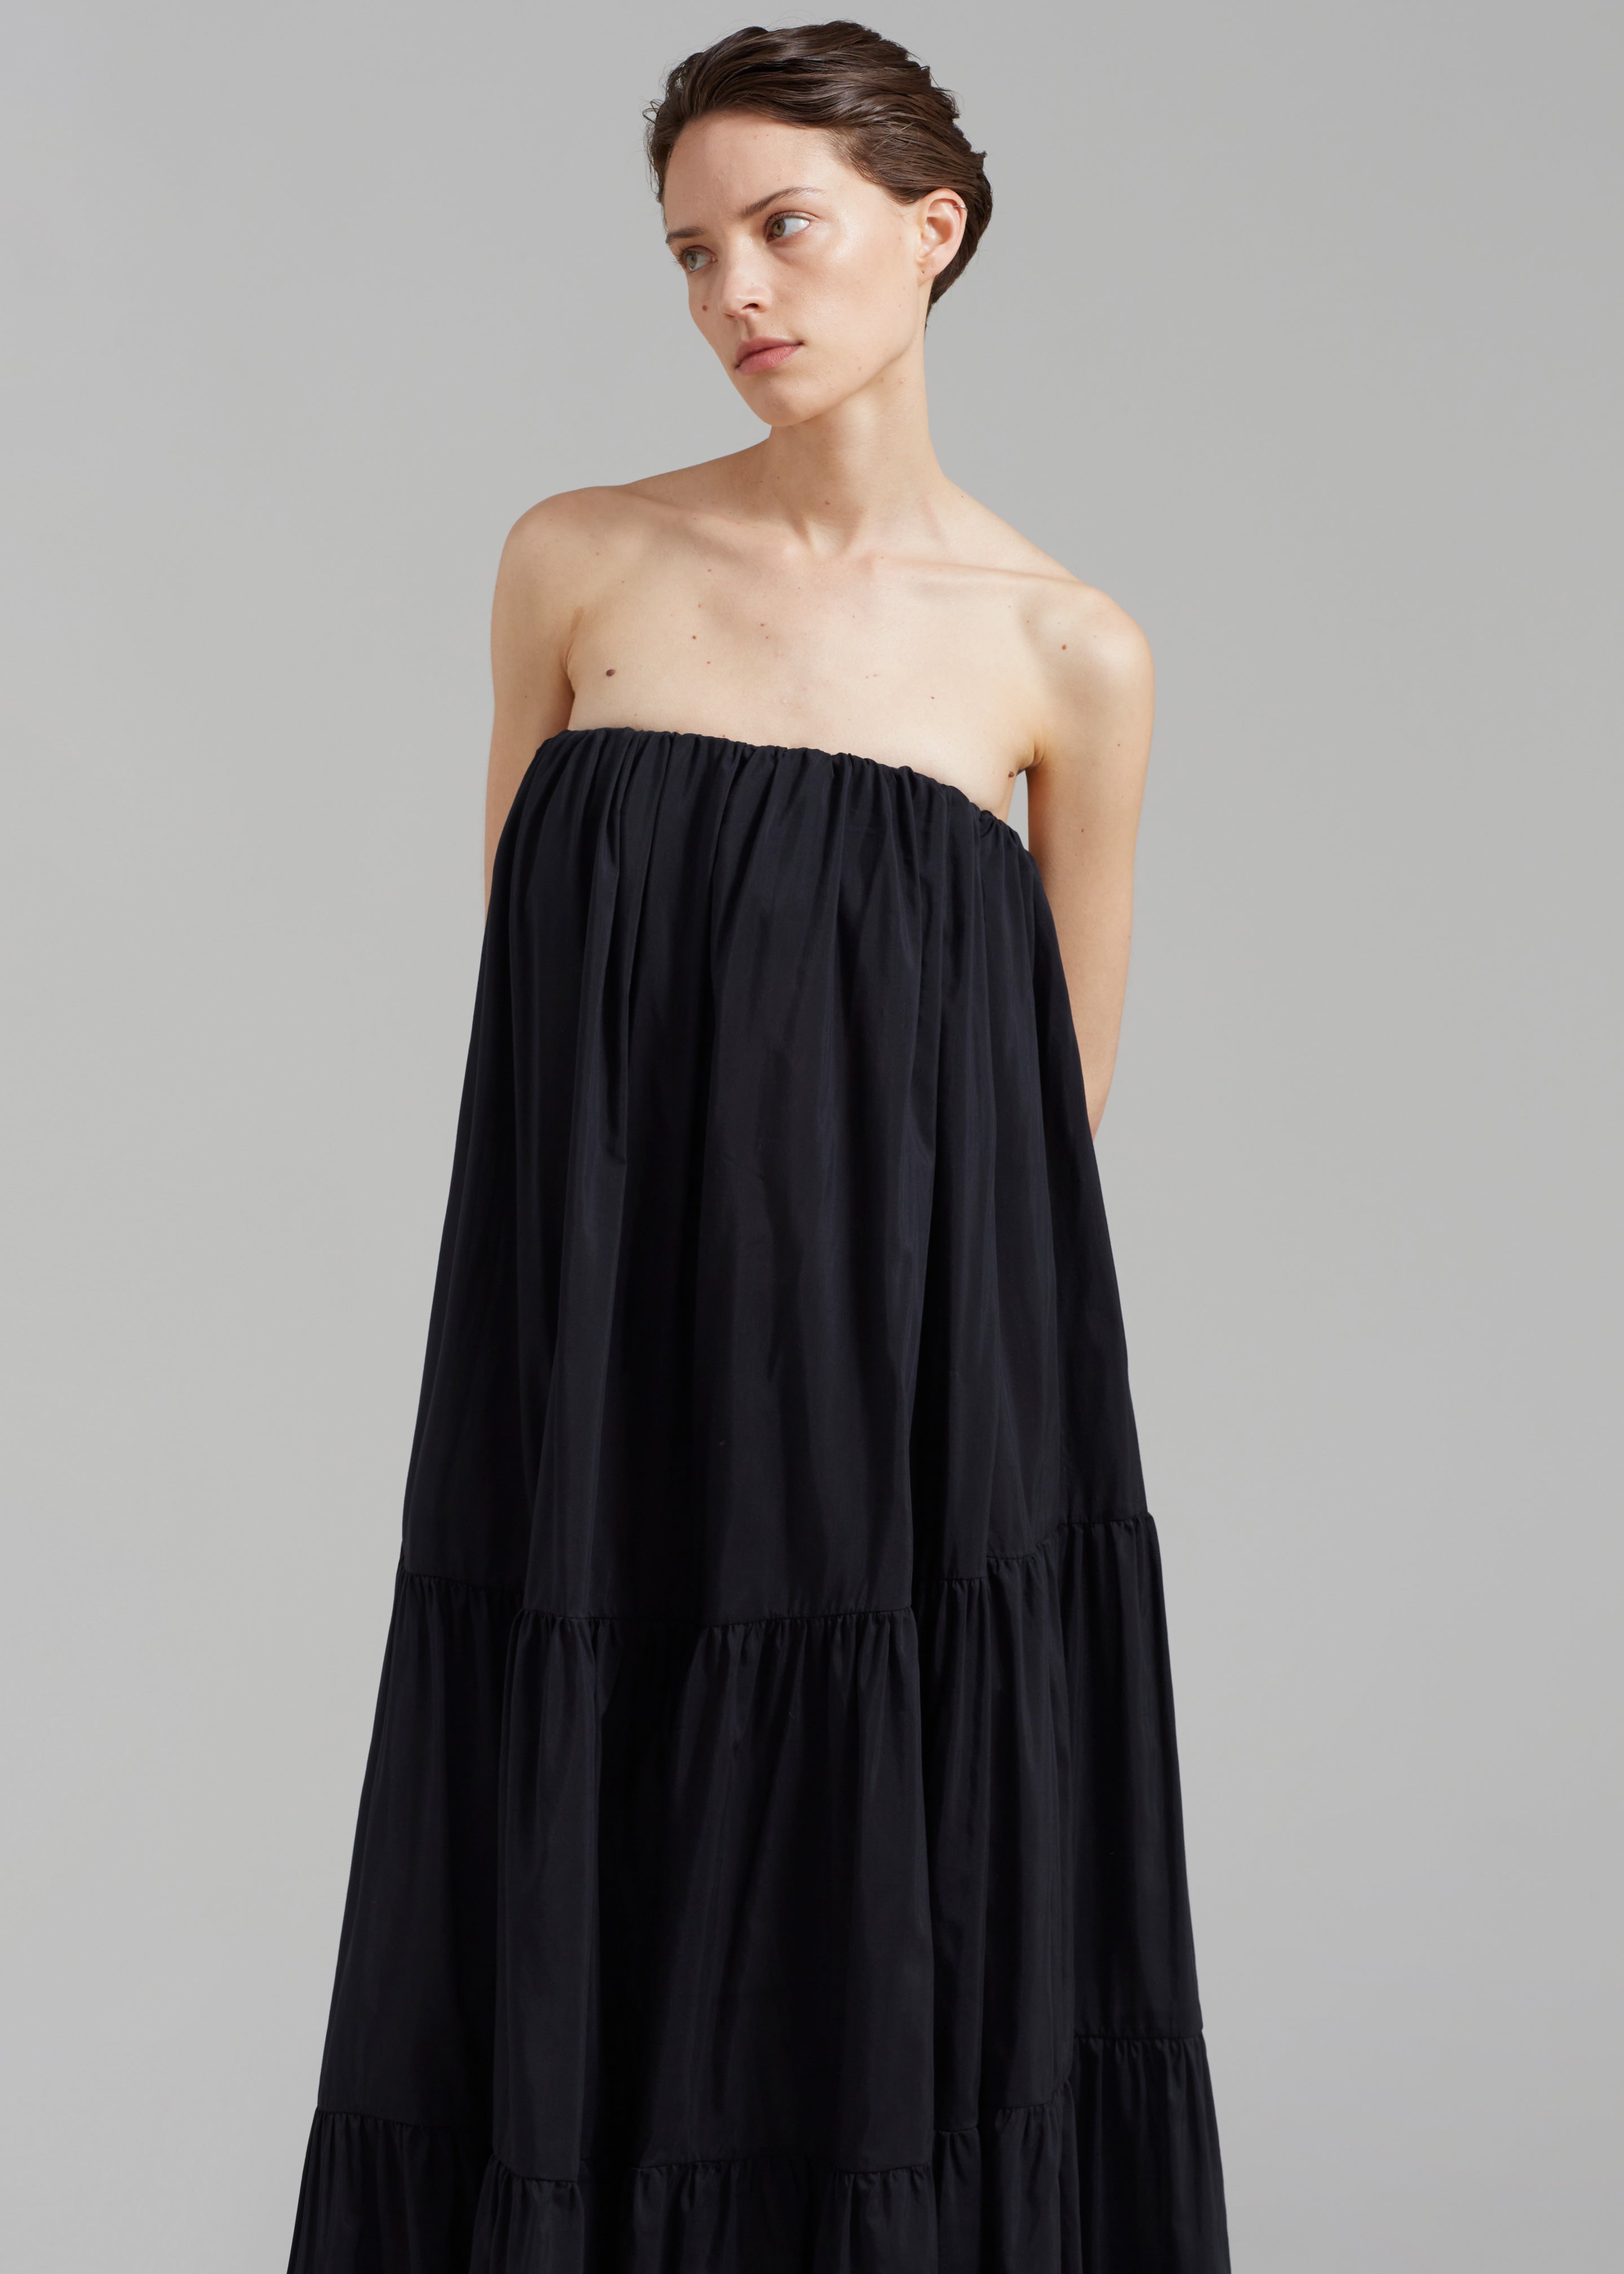 Matteau Voluminous Strapless Tiered Dress - Black - 2